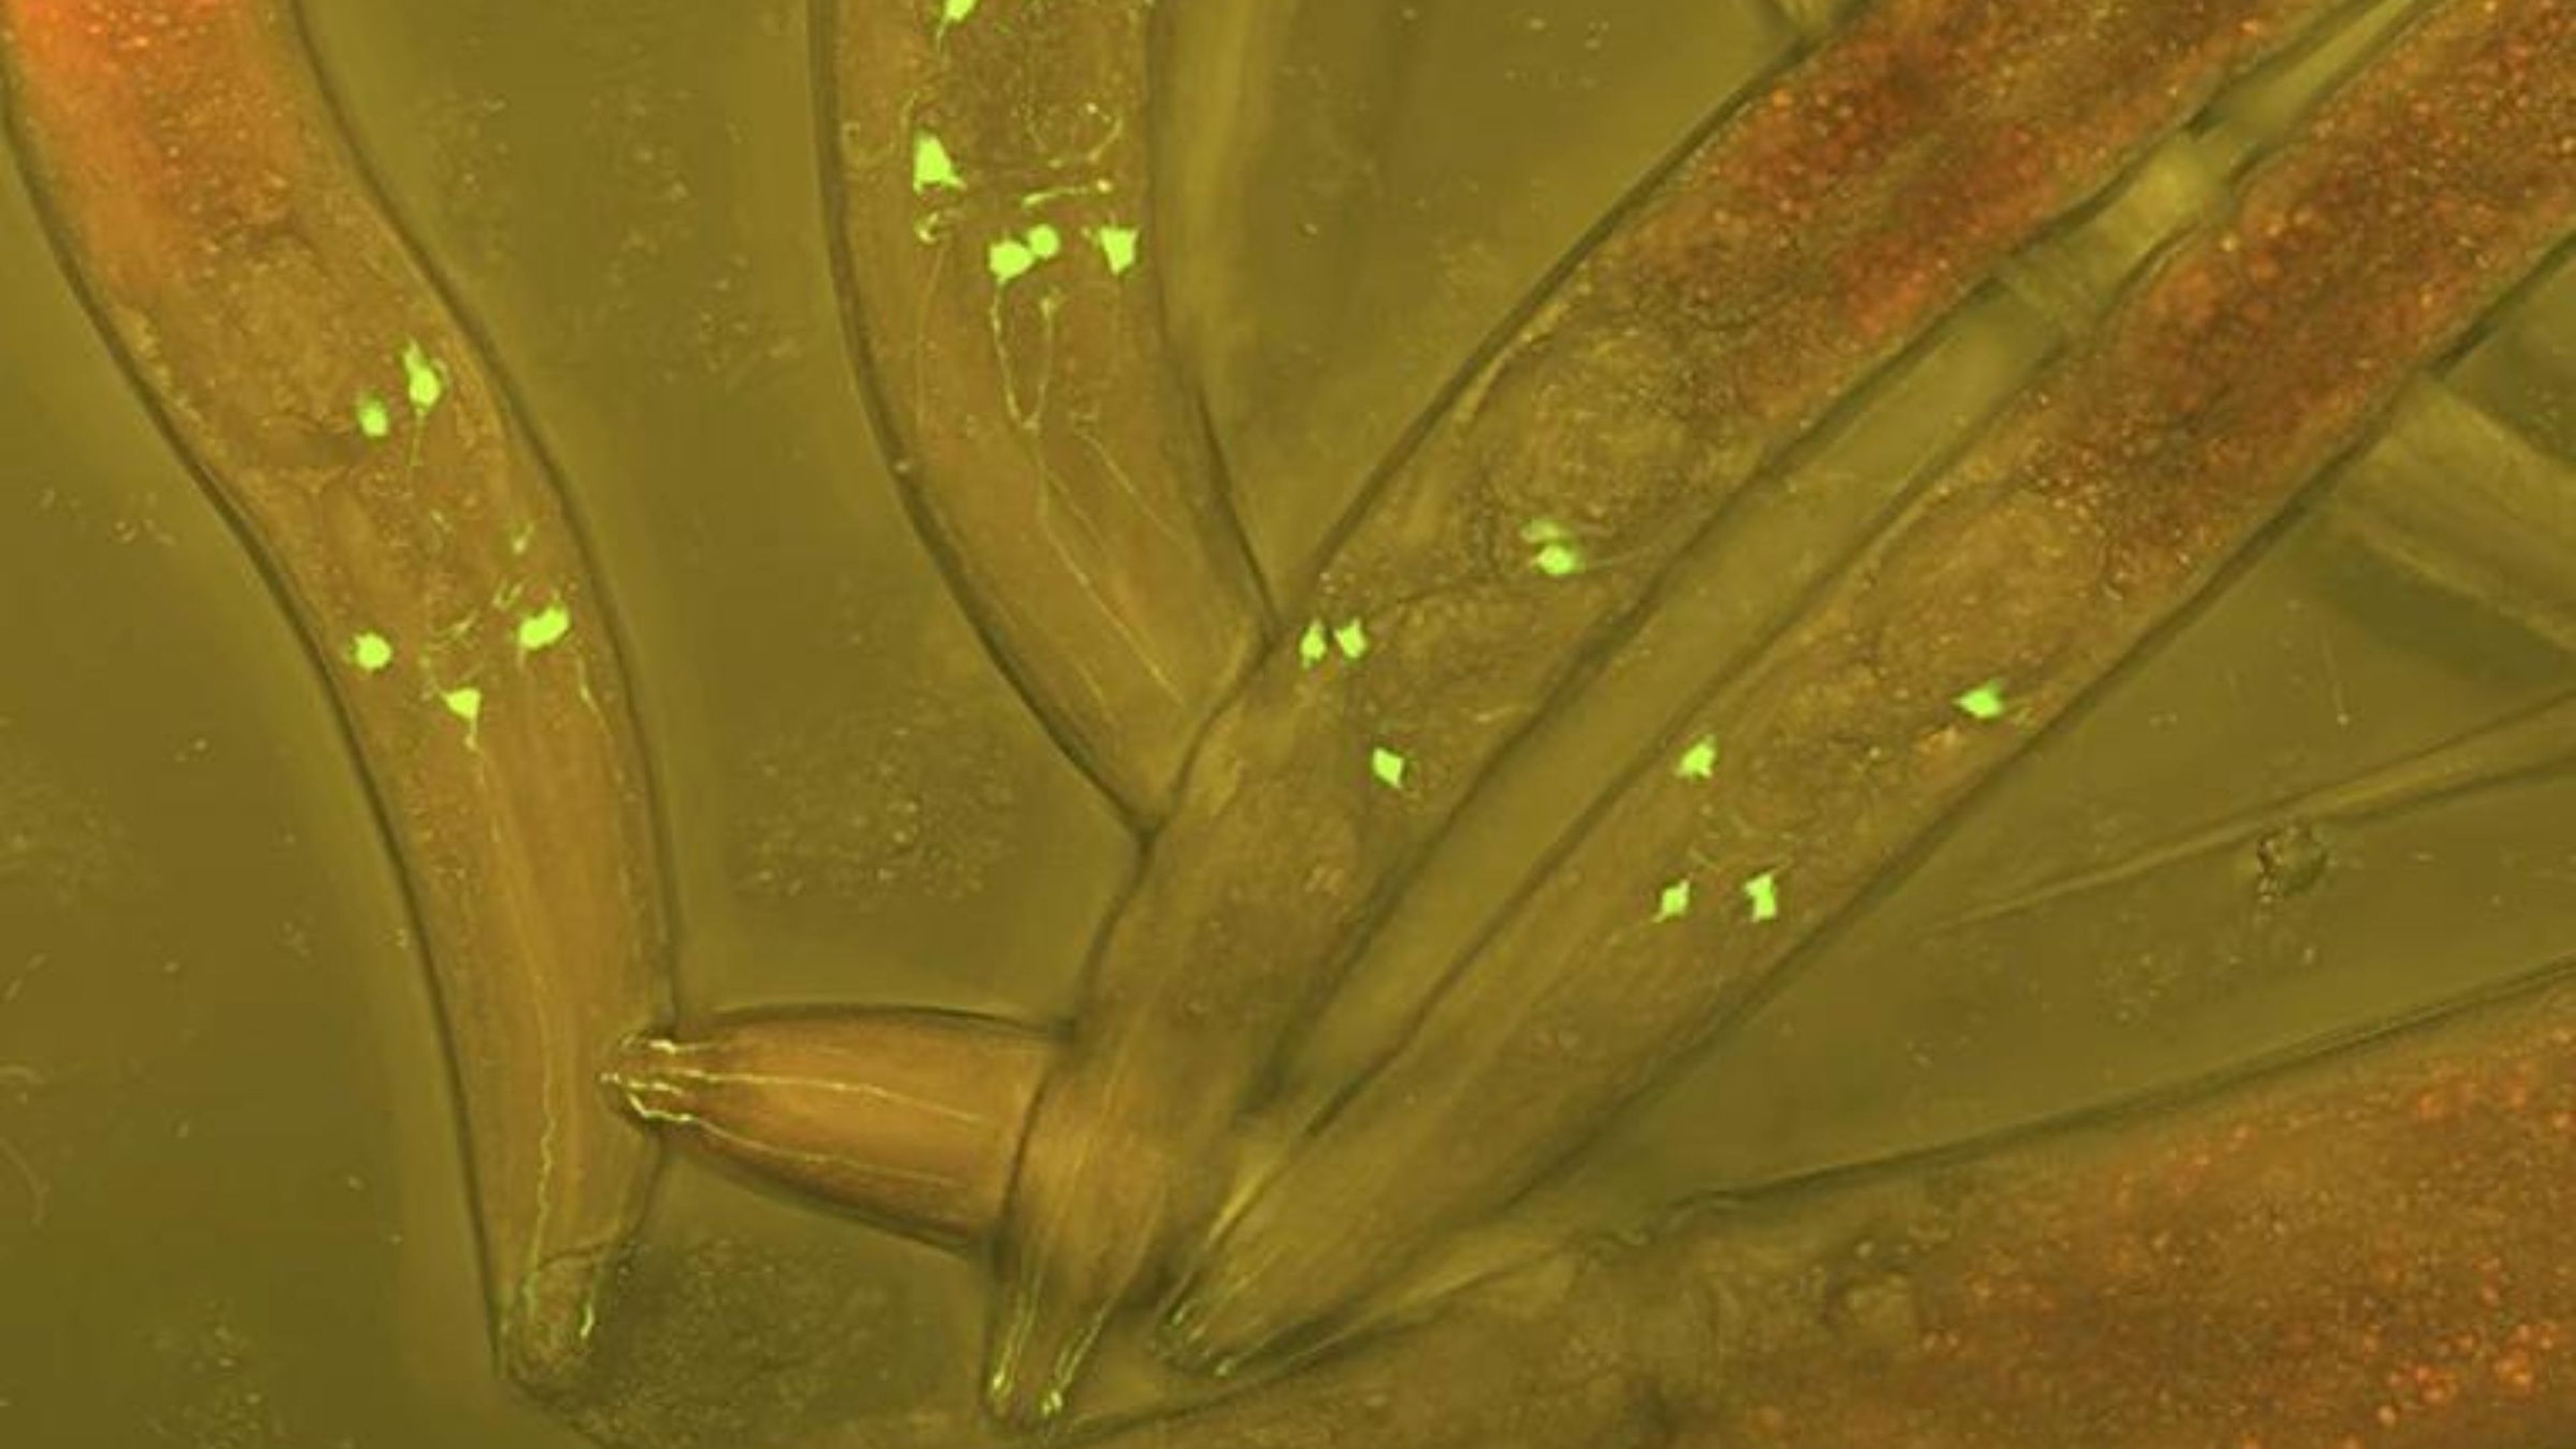 Gusano Caenorhabditis elegans. Crédito: Nature/ Heiti Paves/Biblioteca de fotografías científicas